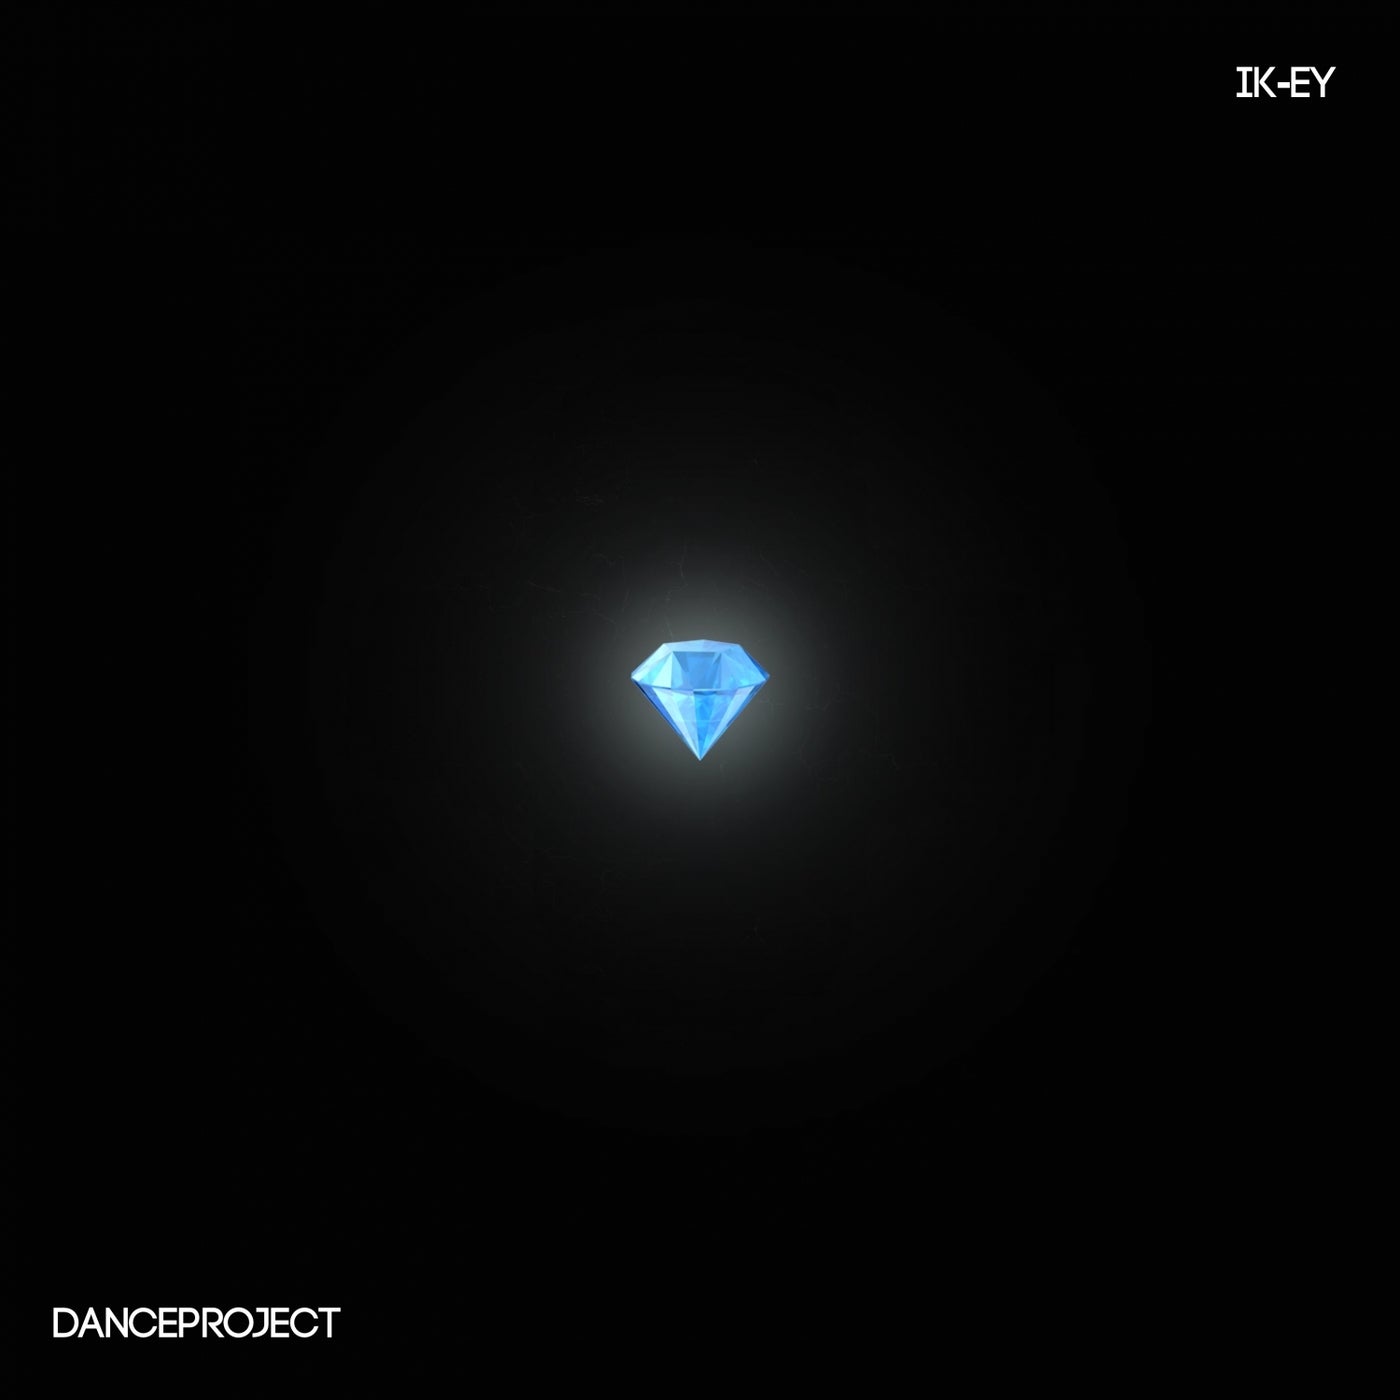 Diamonds - EP